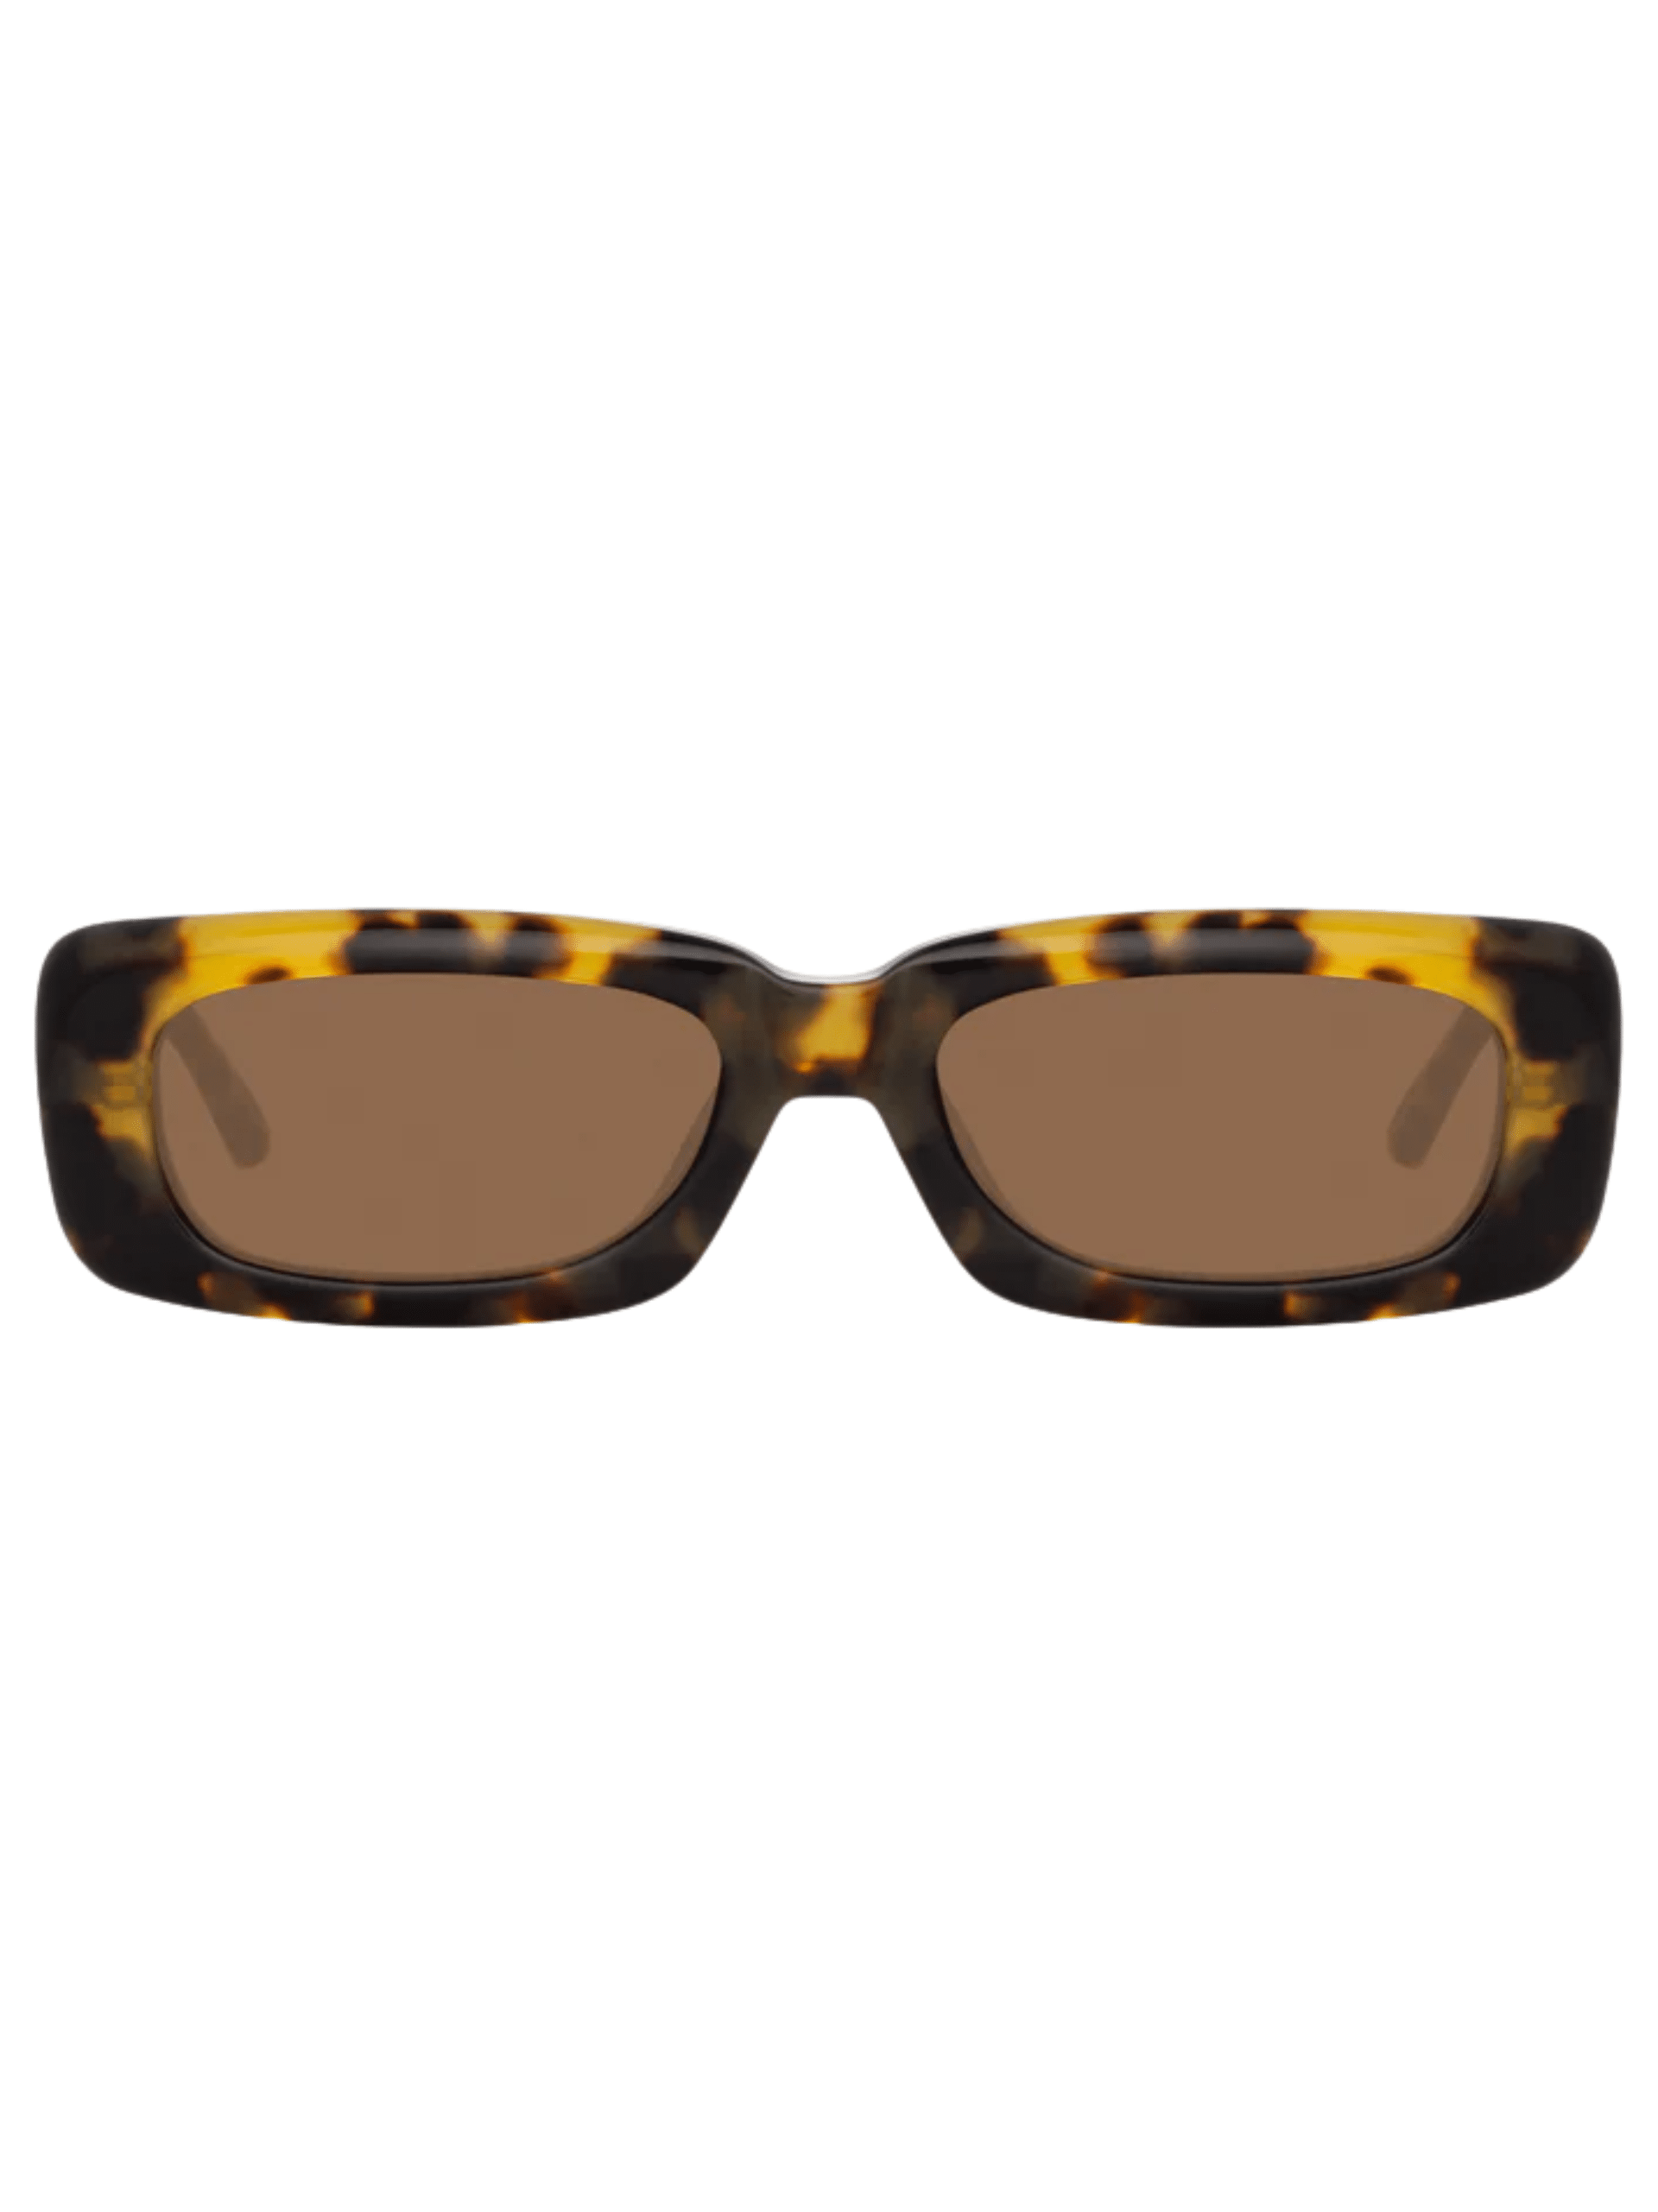 Torino Aviator Sunglasses in Yellow Gold